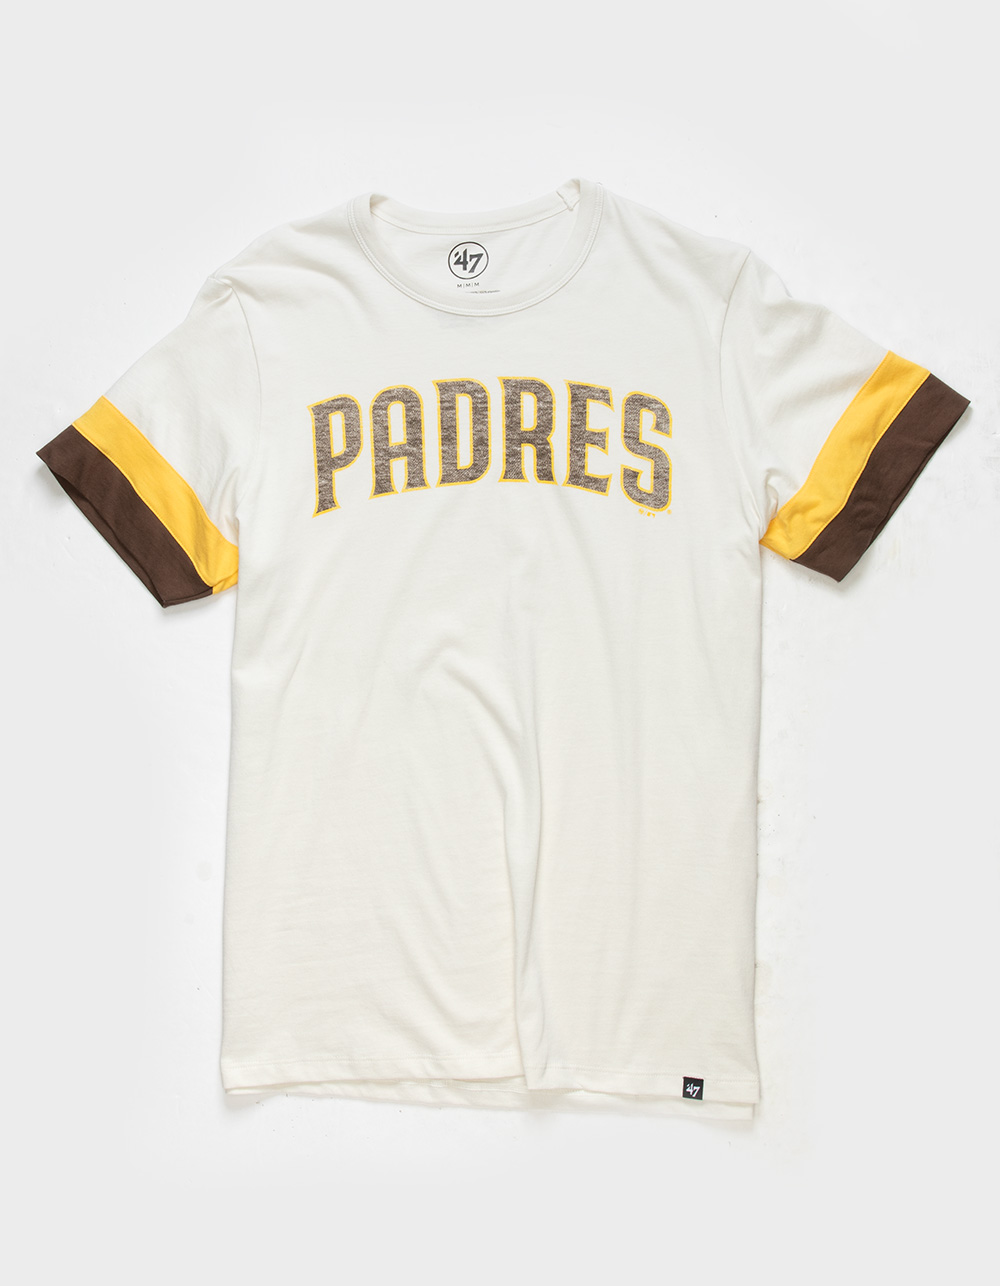 San Diego Padres T-Shirt, Padres Shirts, Padres Baseball Shirts, Tees